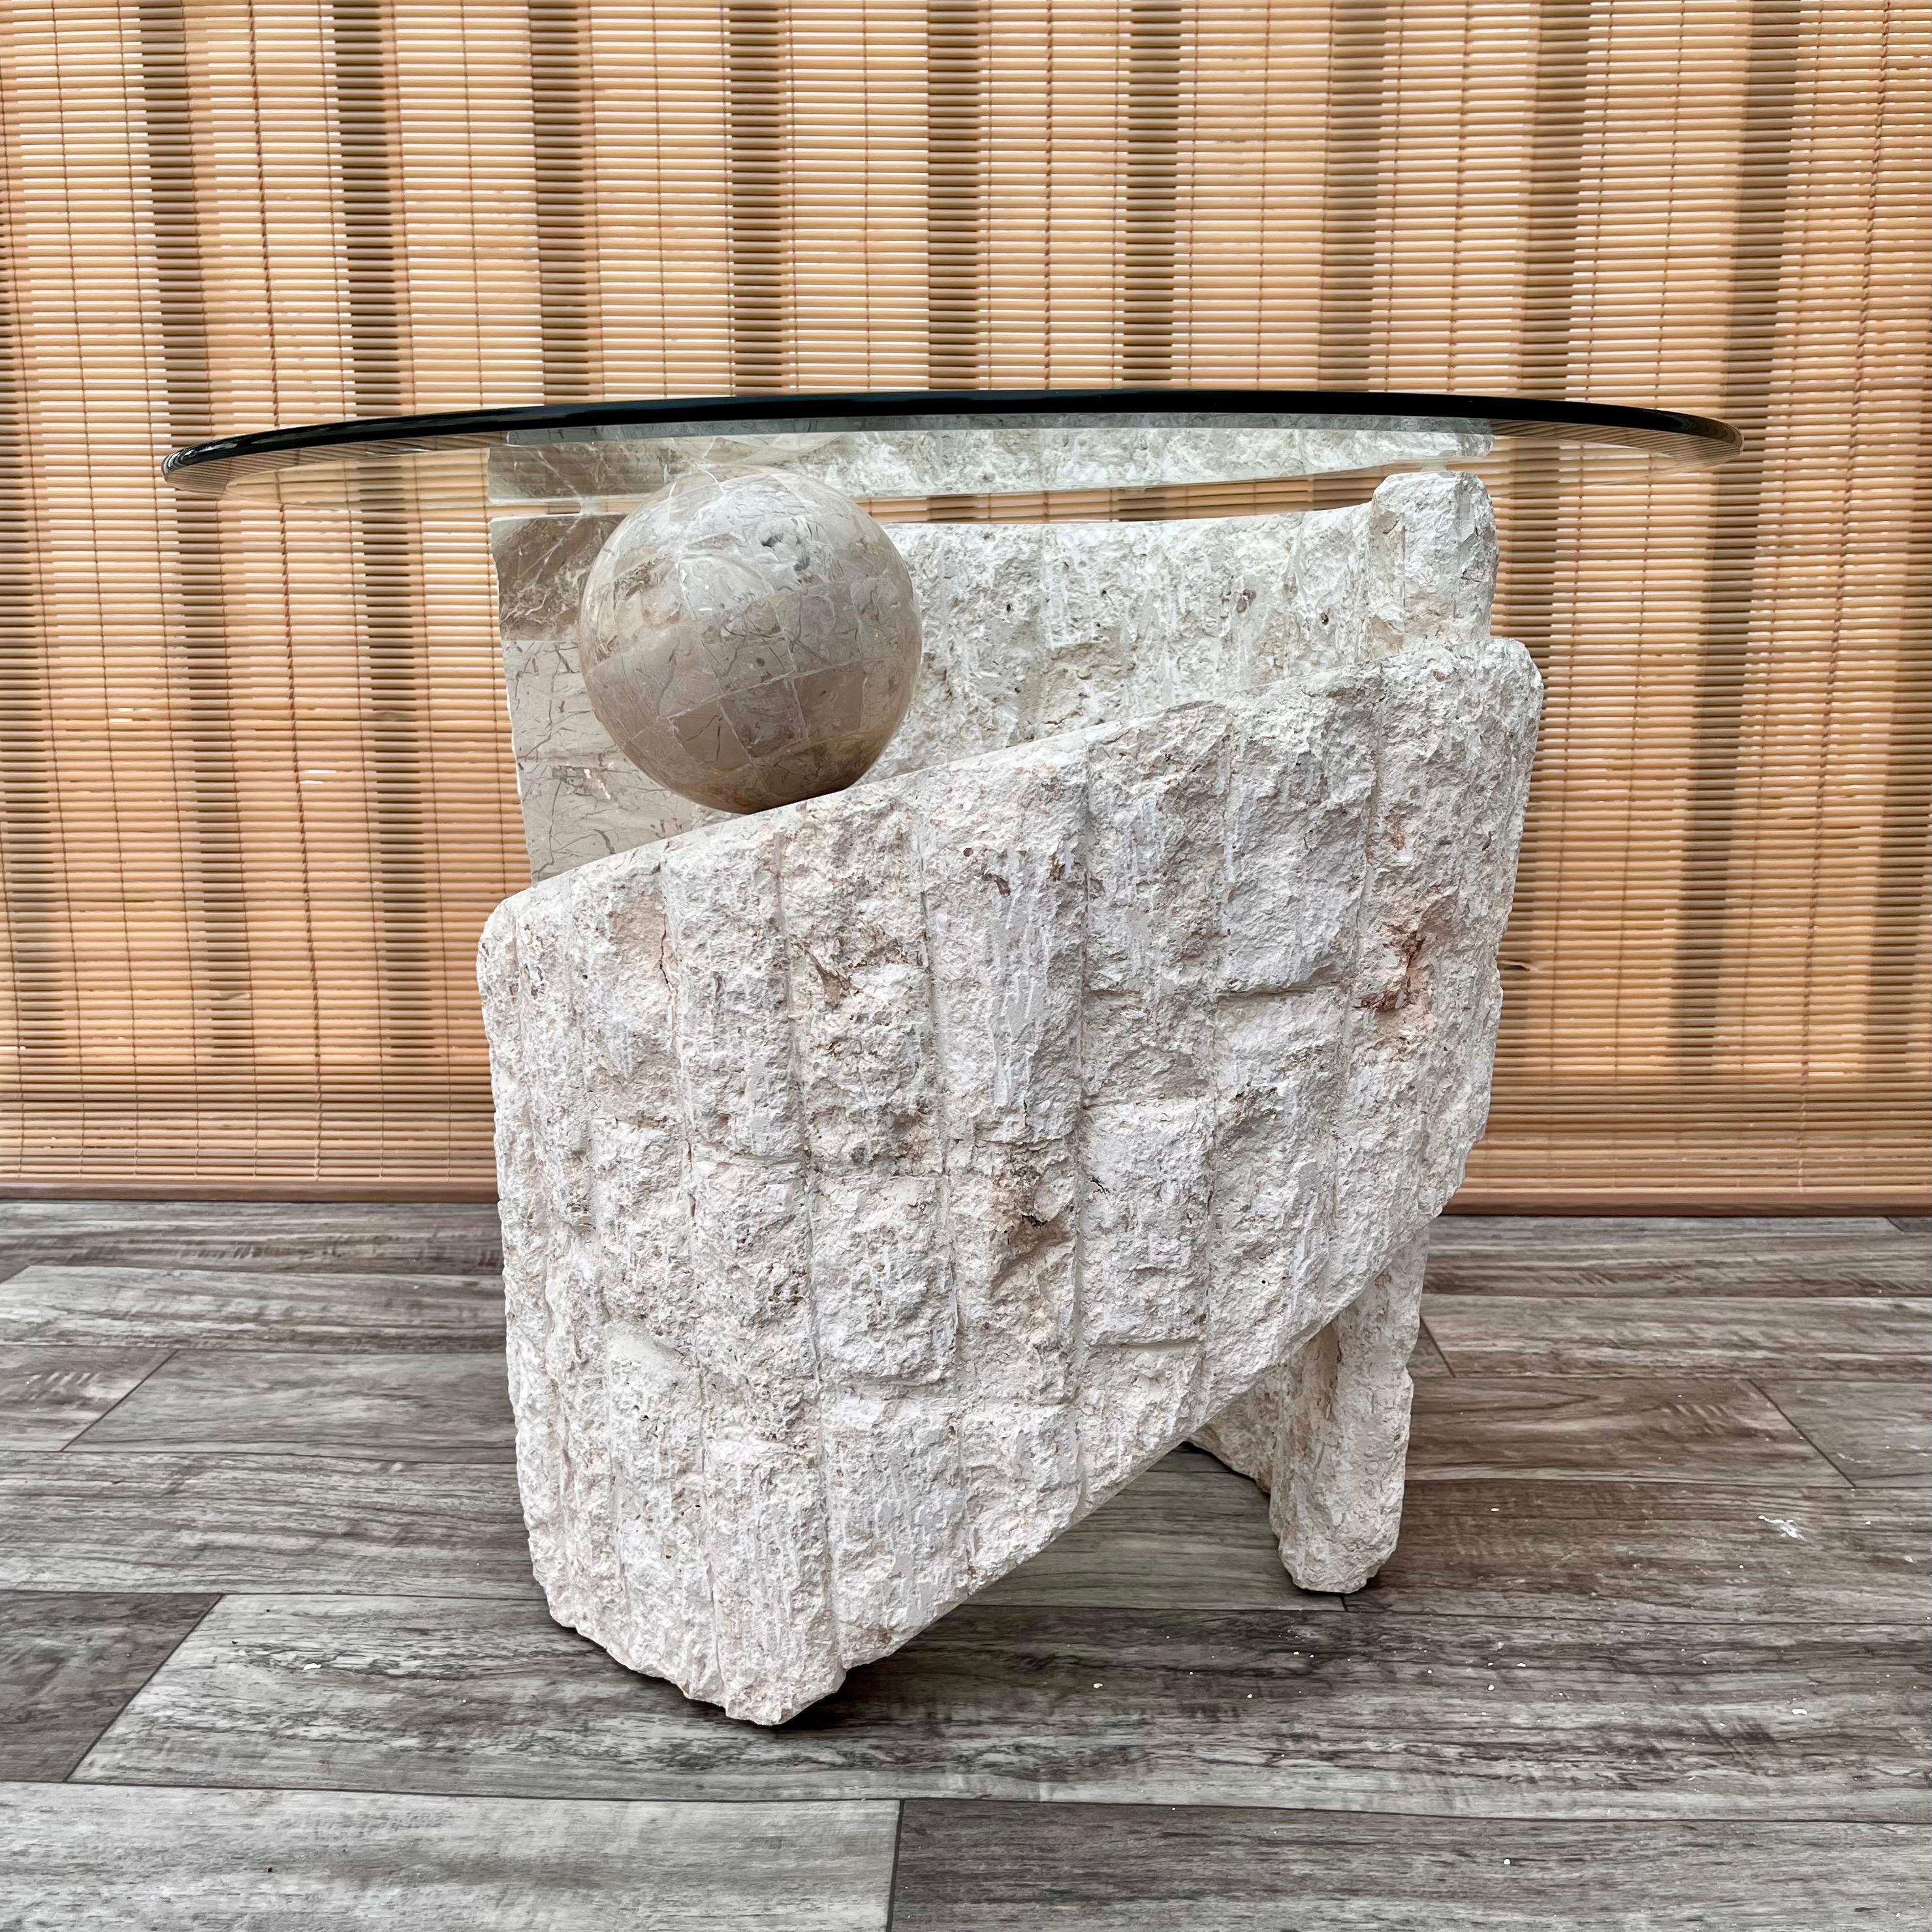 Vintage Postmodern skulpturalen natürlichen Mactan Stein gerundet Akzent / Beistelltisch mit Glasplatte. Ca. 1980er Jahre 
Der skulpturale spiralförmige Sockel besteht aus einer kontrastreichen Kombination von gebrochenem und poliertem Mactan-Stein